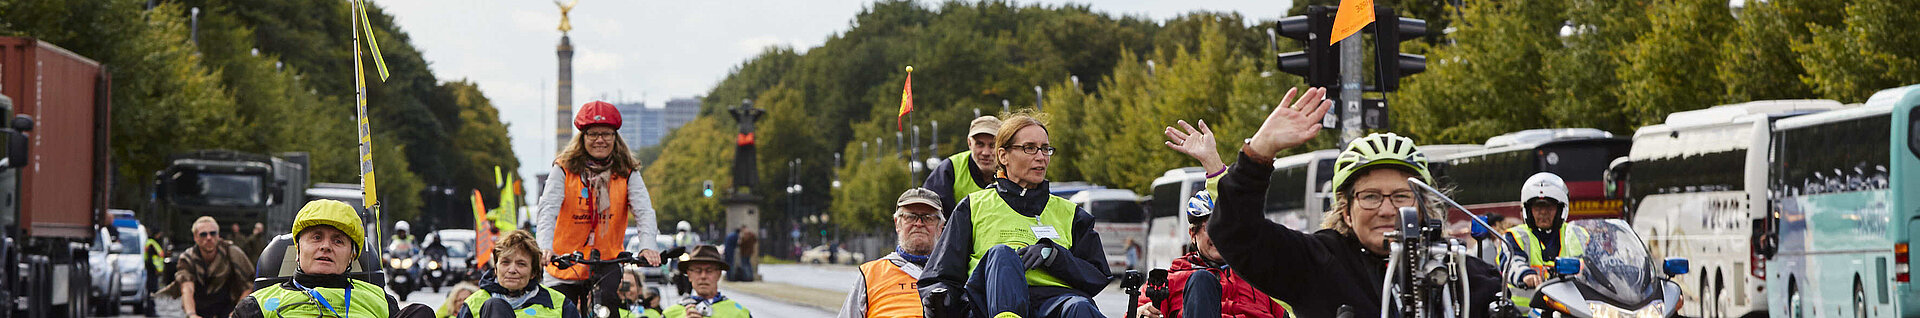 Menschen fahren mit behindertengerechten Rädern. Im Hintergrund die Siegessäule.